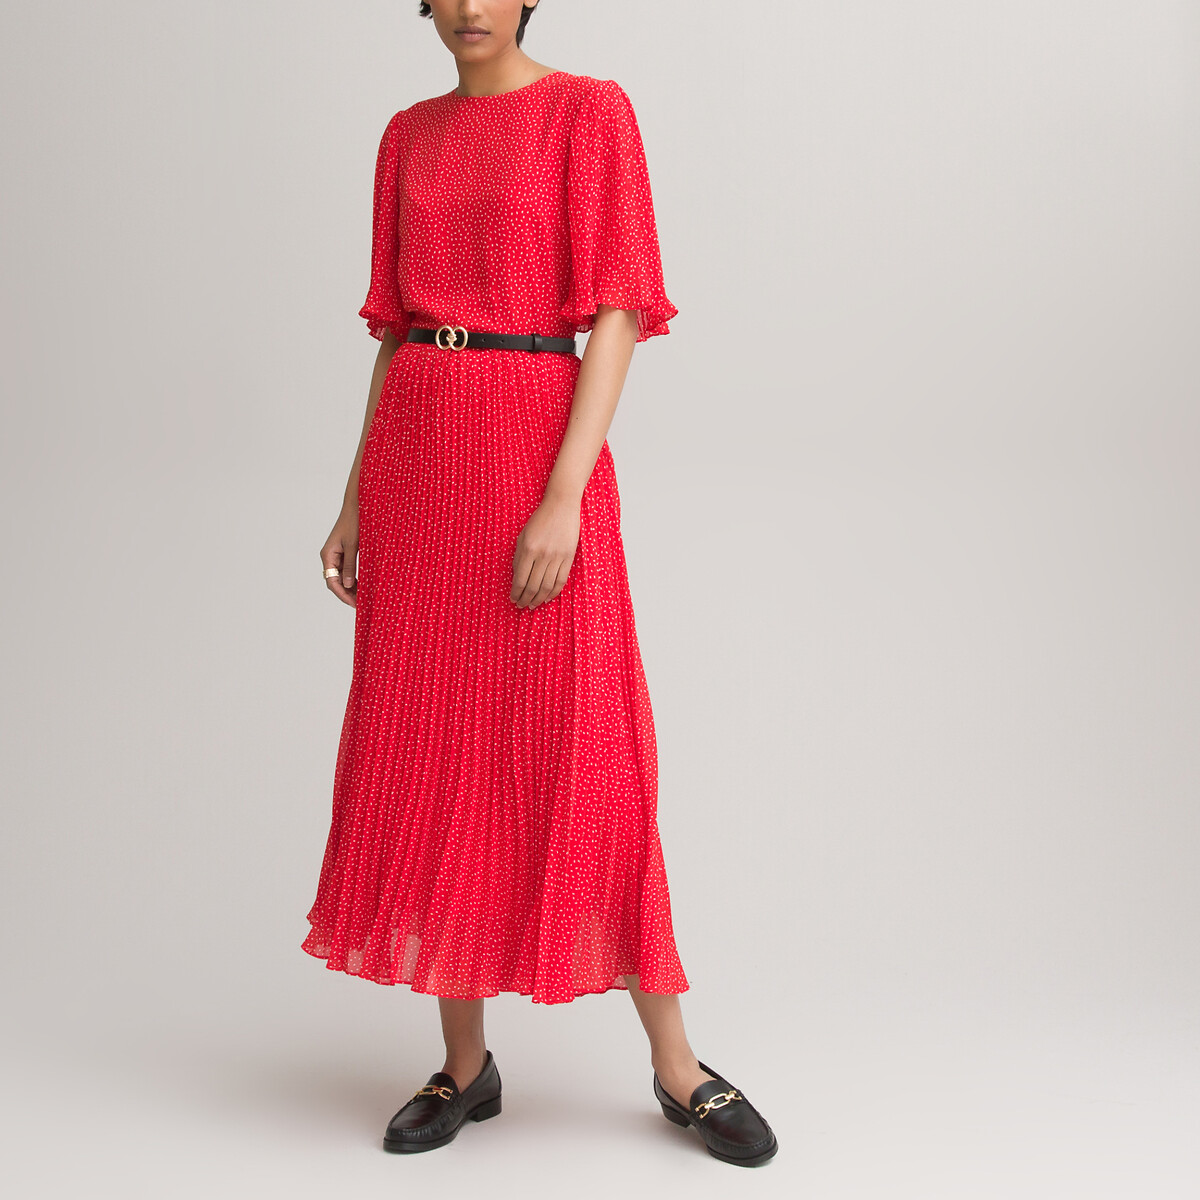 Платье LaRedoute С круглым вырезом и короткими рукавами с принтом 50 красный, размер 50 - фото 2